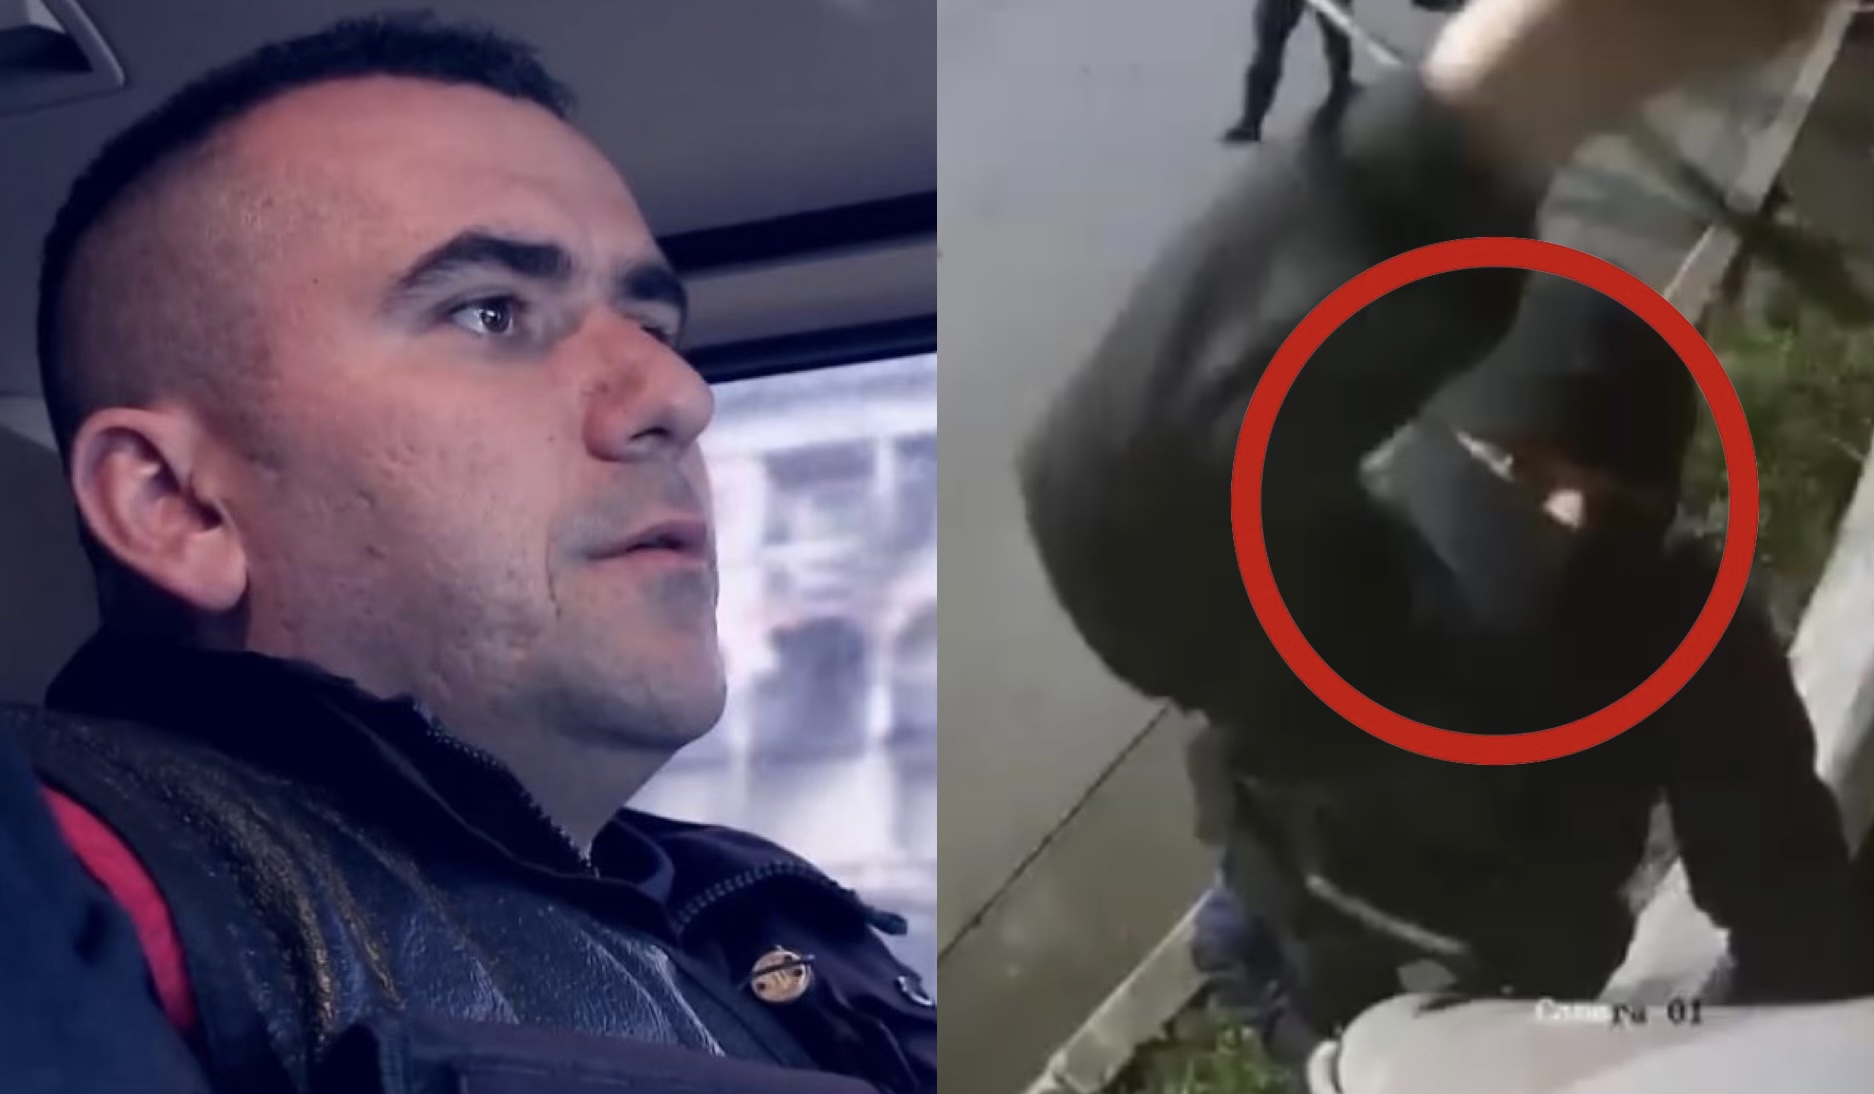 “Shefi i Policisë Kurbin, Shkëlzen Metushi bashkëpunëtor në atentat, hoqi kamerat e sigurisë pak netë më parë”